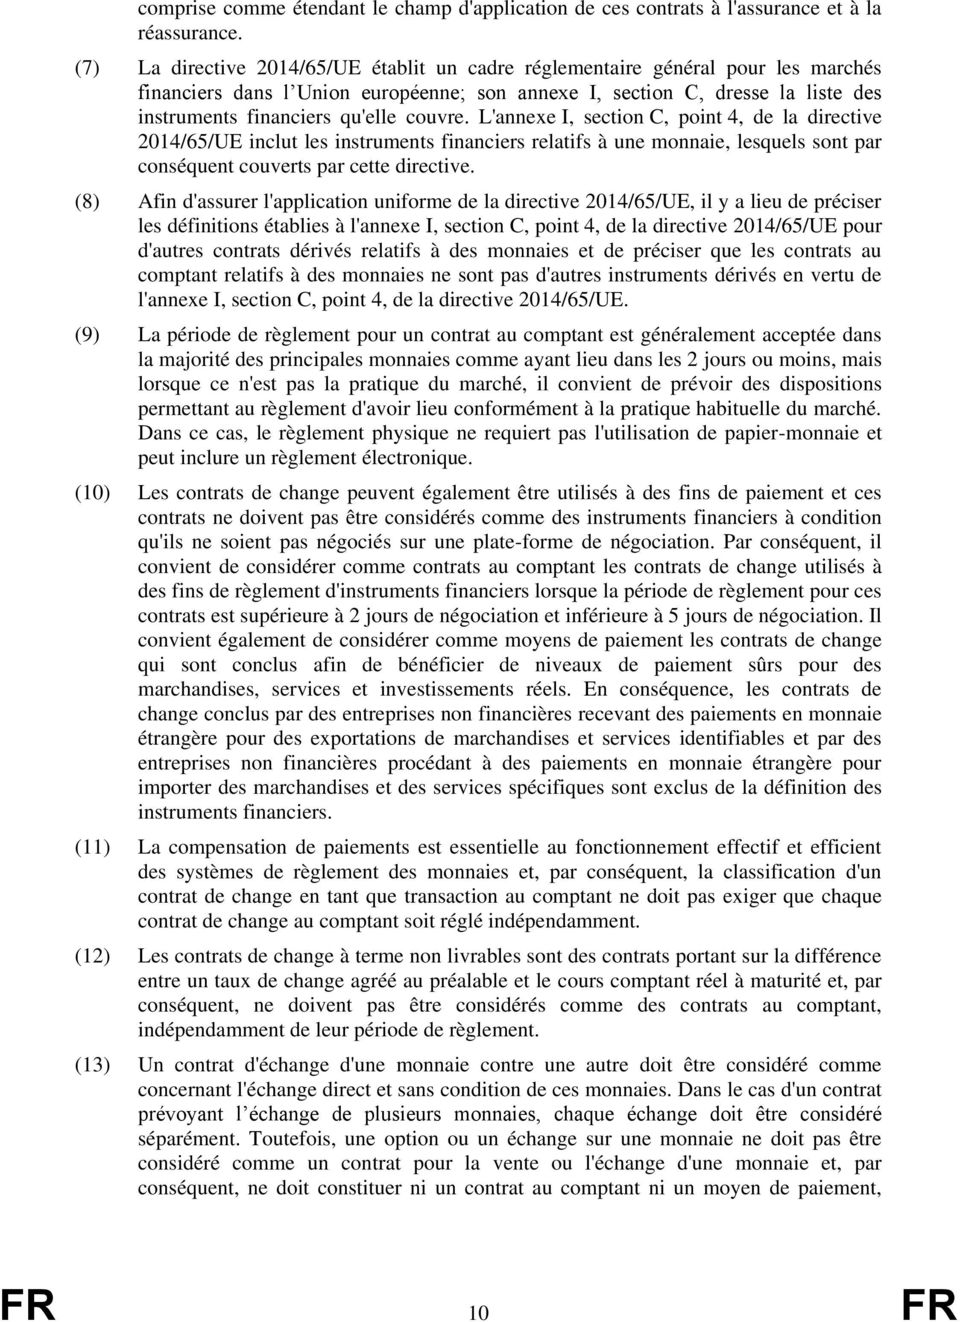 couvre. L'annexe I, section C, point 4, de la directive 2014/65/UE inclut les instruments financiers relatifs à une monnaie, lesquels sont par conséquent couverts par cette directive.